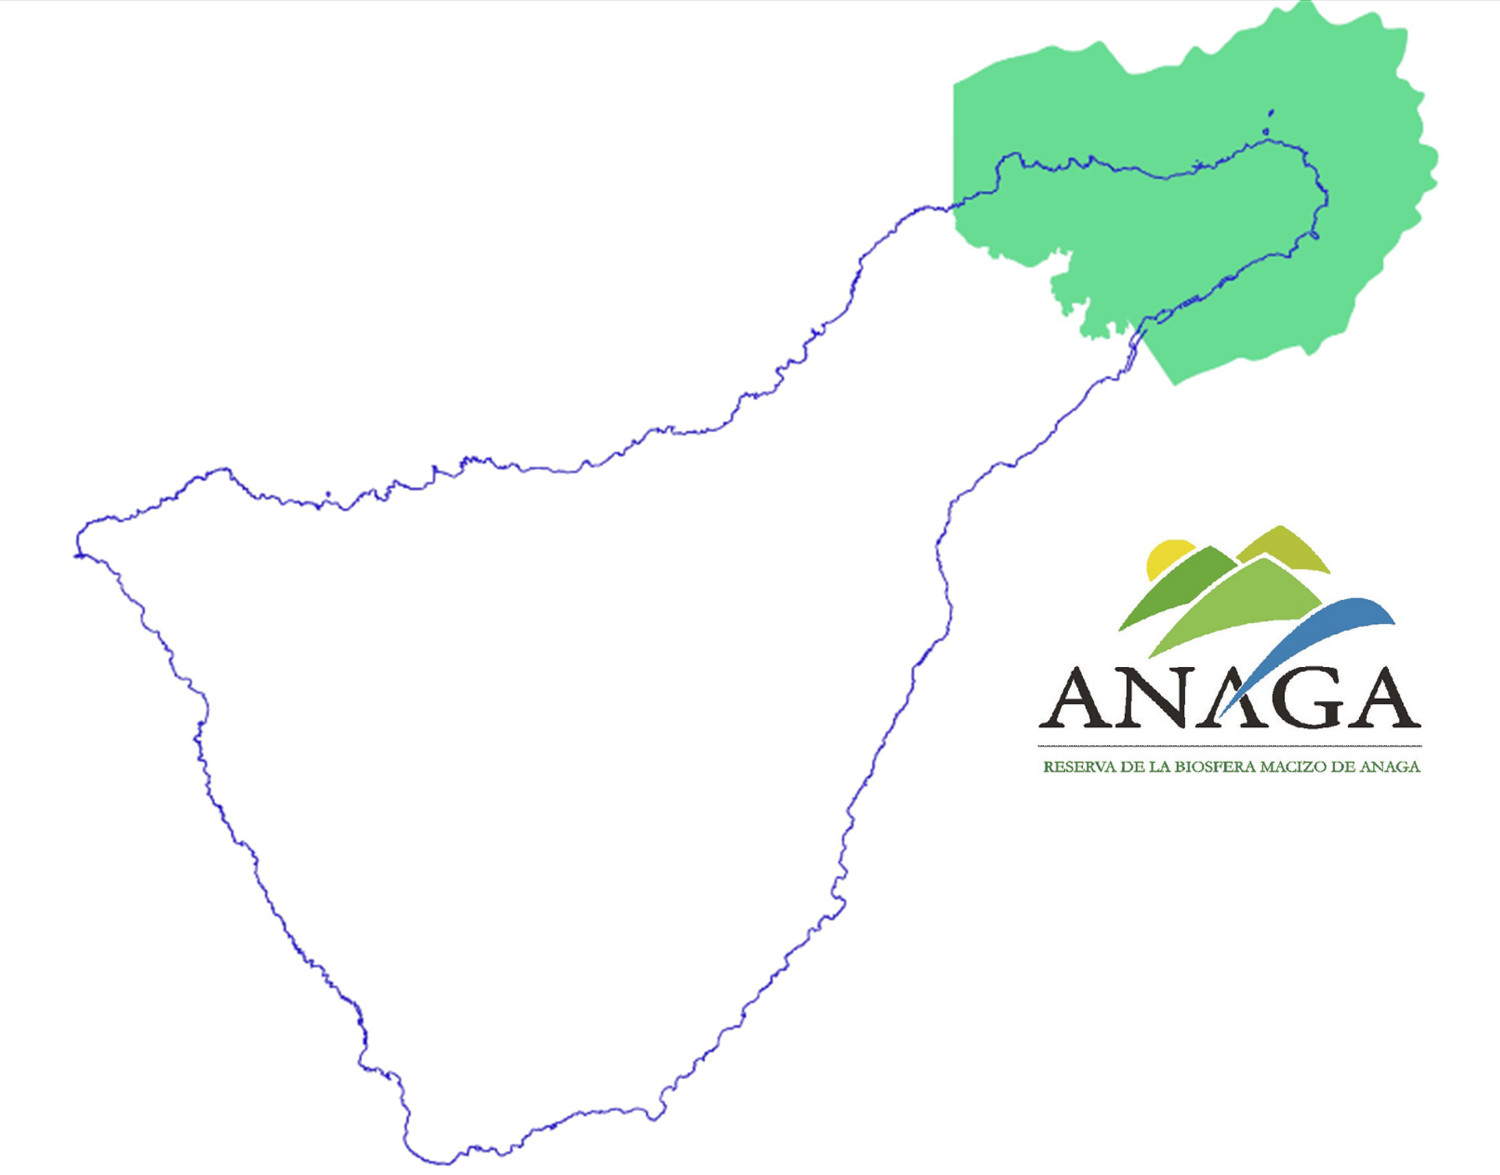 Mapa límites de la Reserva de la Biosfera Macizo de Anaga